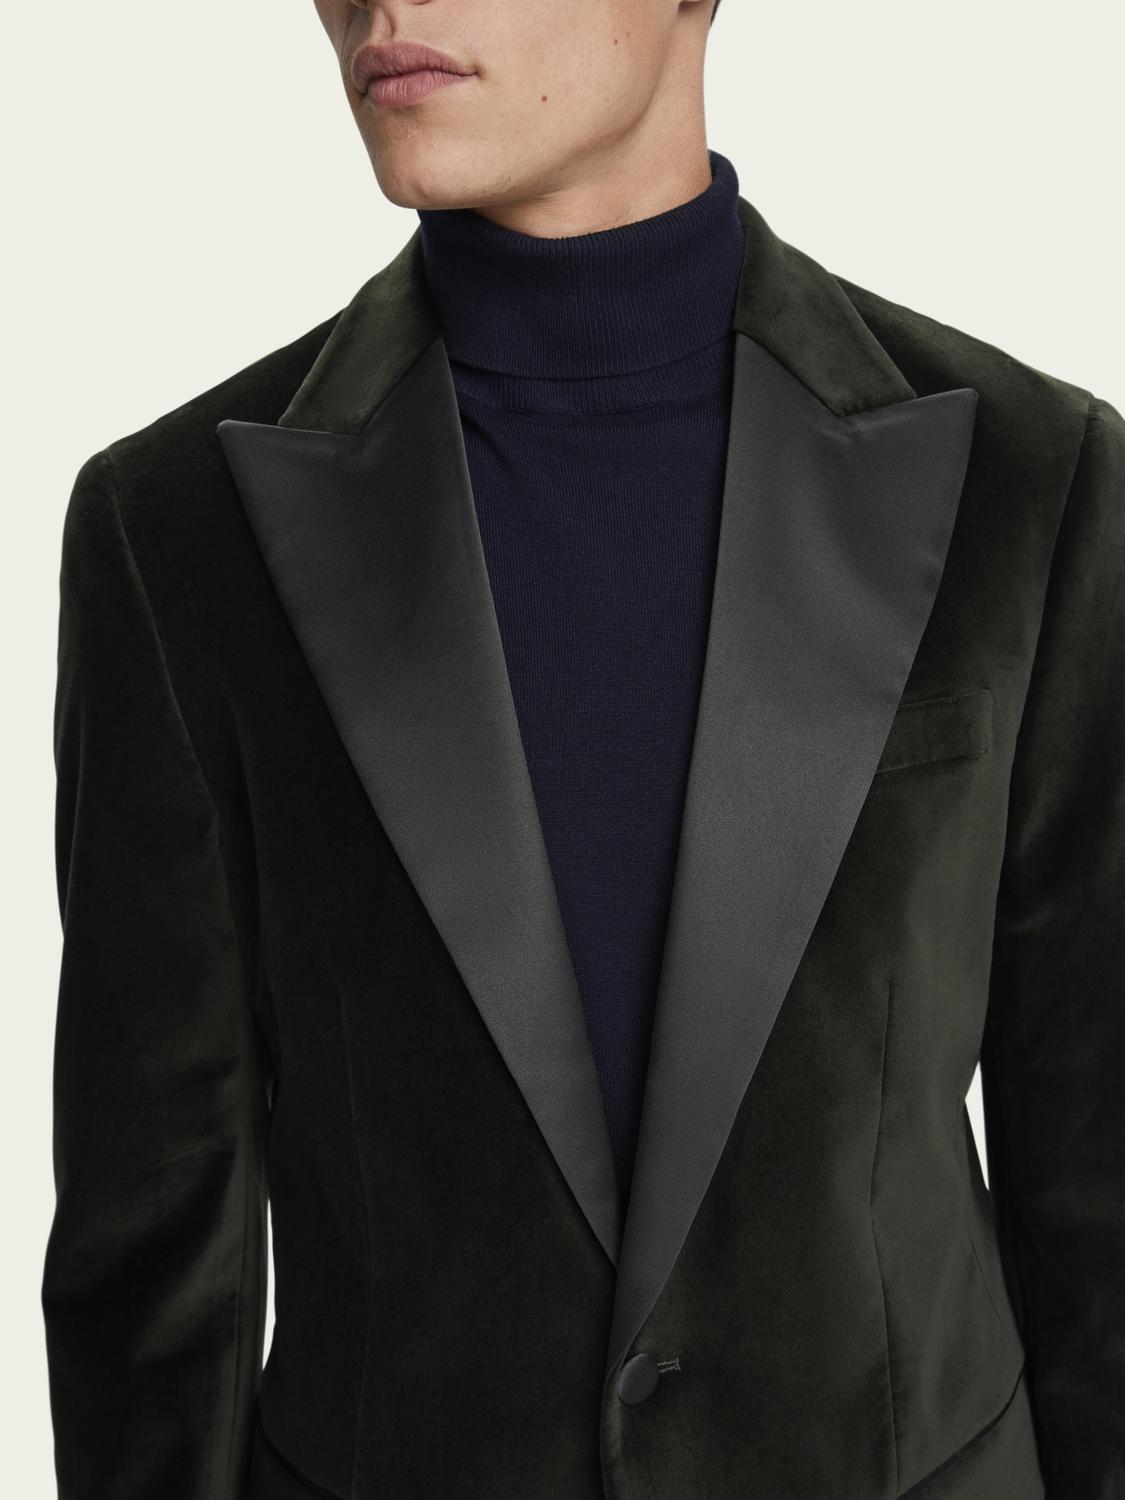 Scotch & Soda Satin-trimmed Velvet Blazer in Black for Men - Lyst